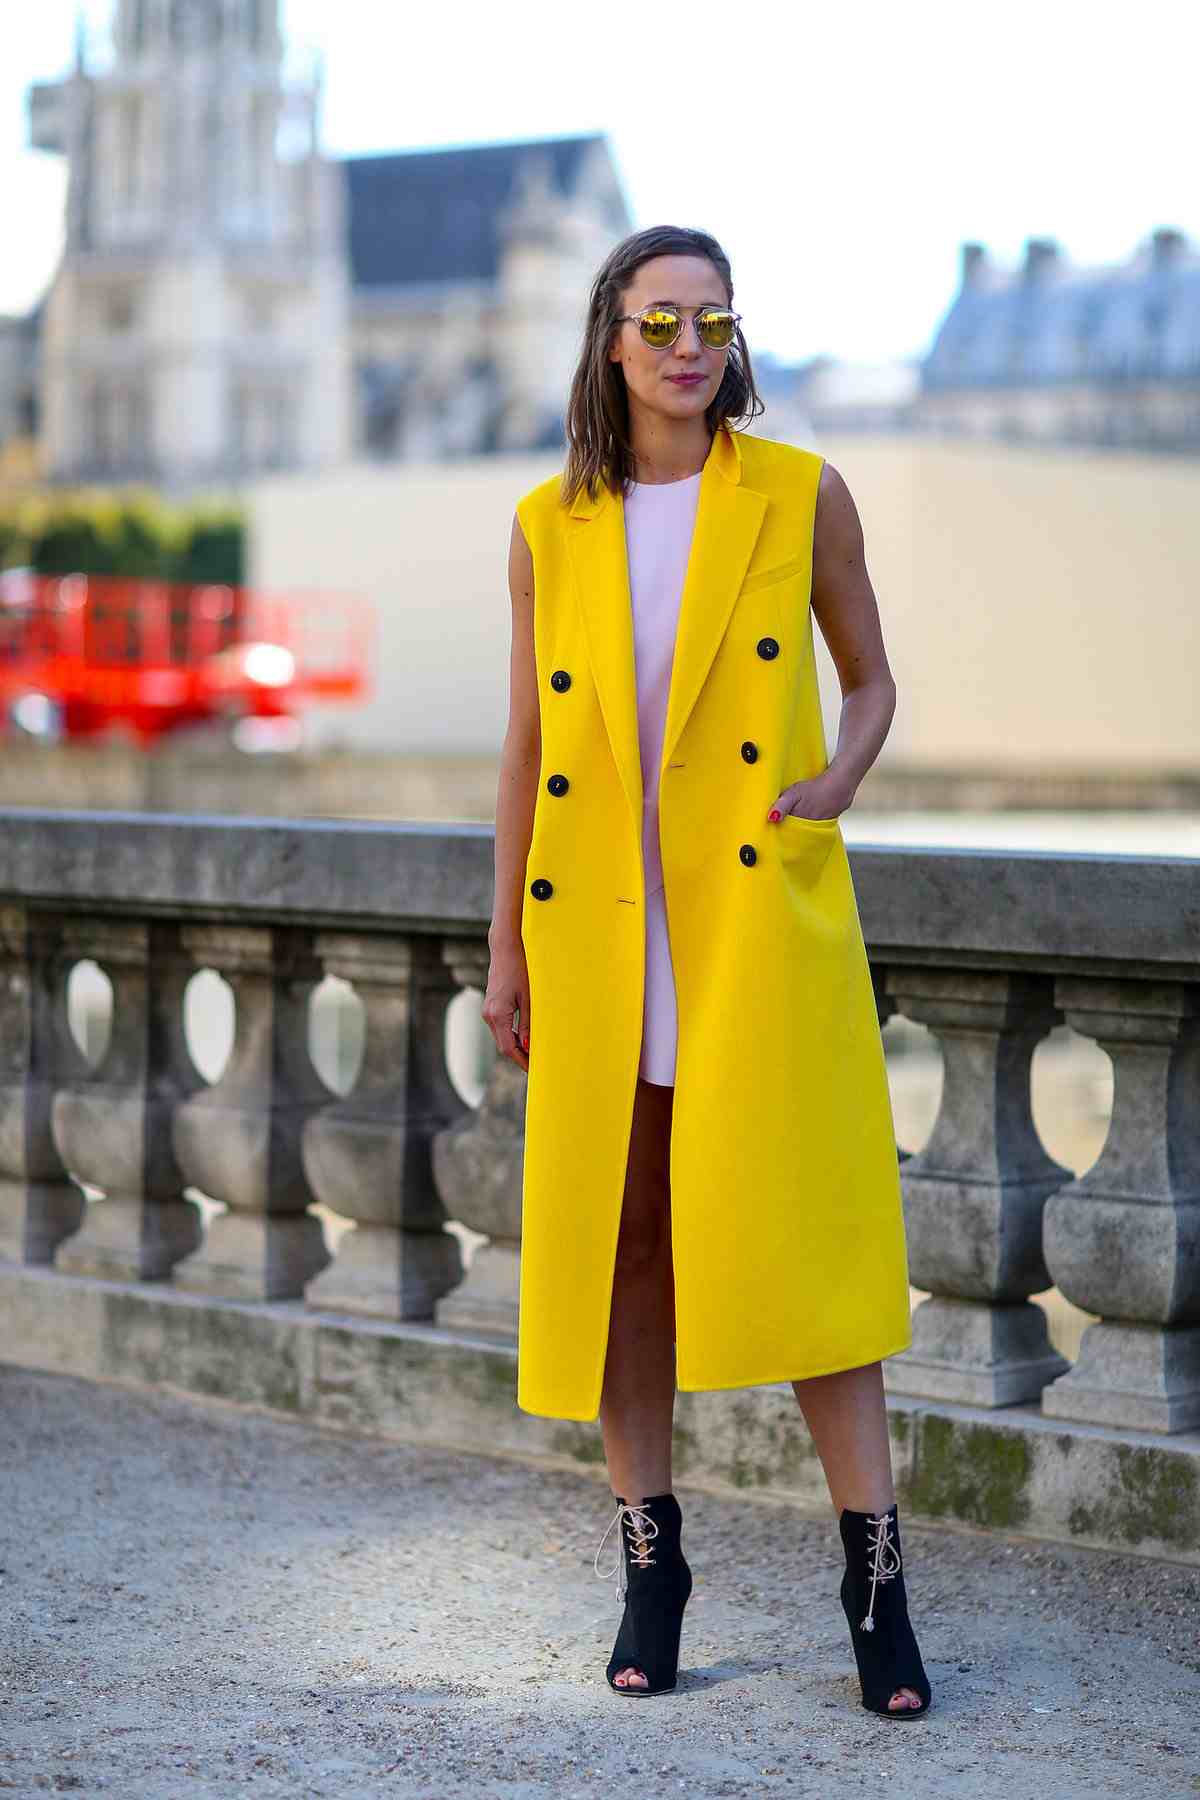 Långväst gul kombinera eleganta miniklänning pastellfärgade fotled stövlar runda solglasögon